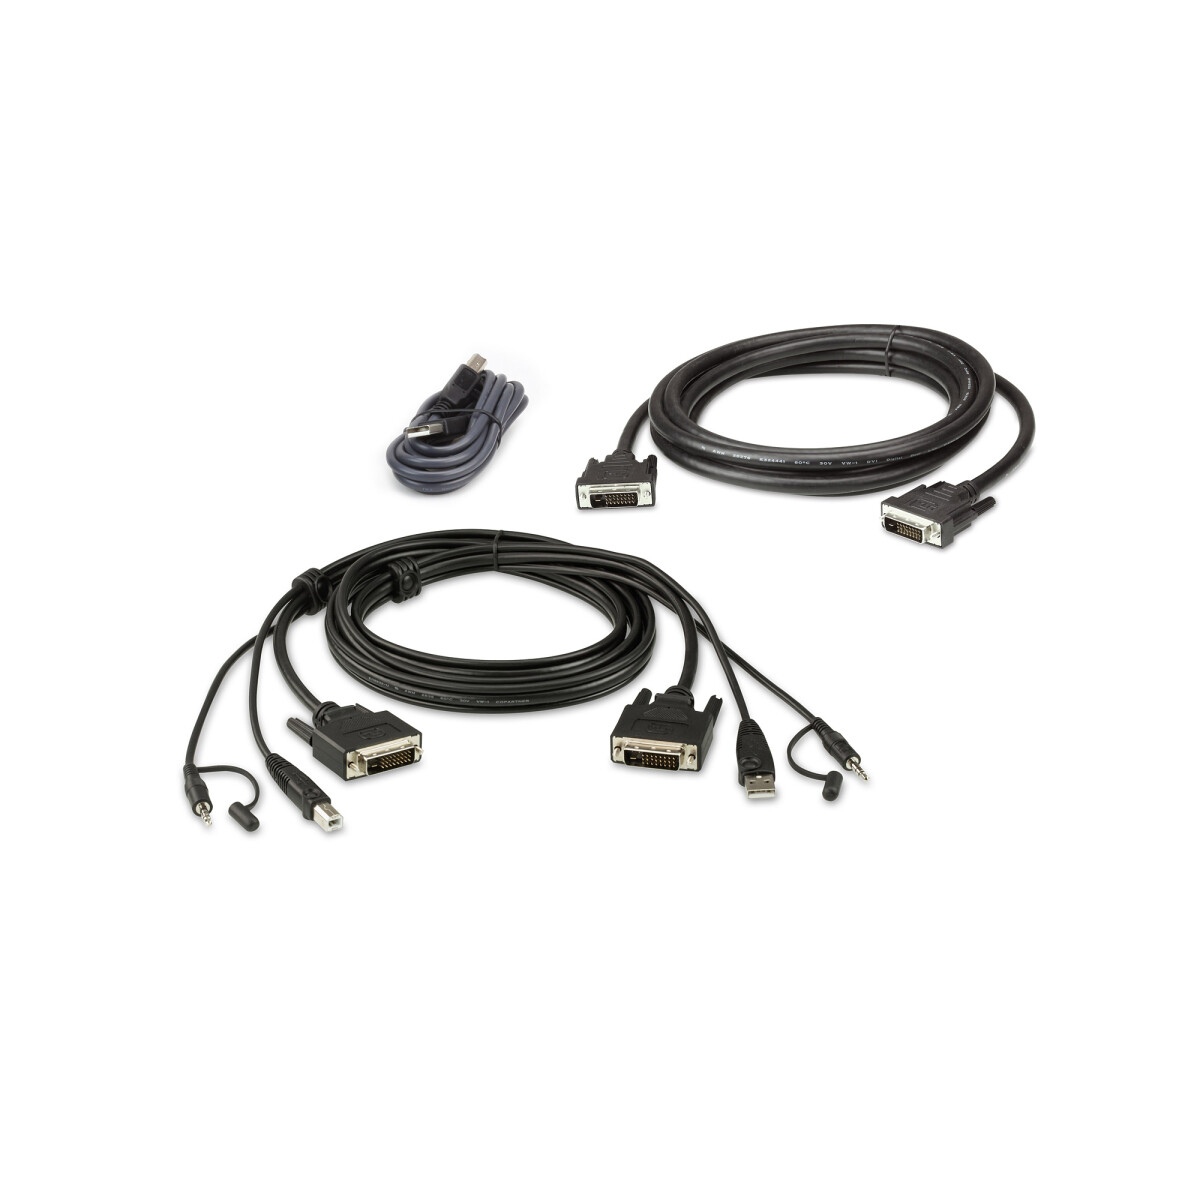 ATEN 2L-7D02UDX3 KVM Cable Set, USB DVI-D Dual Display...